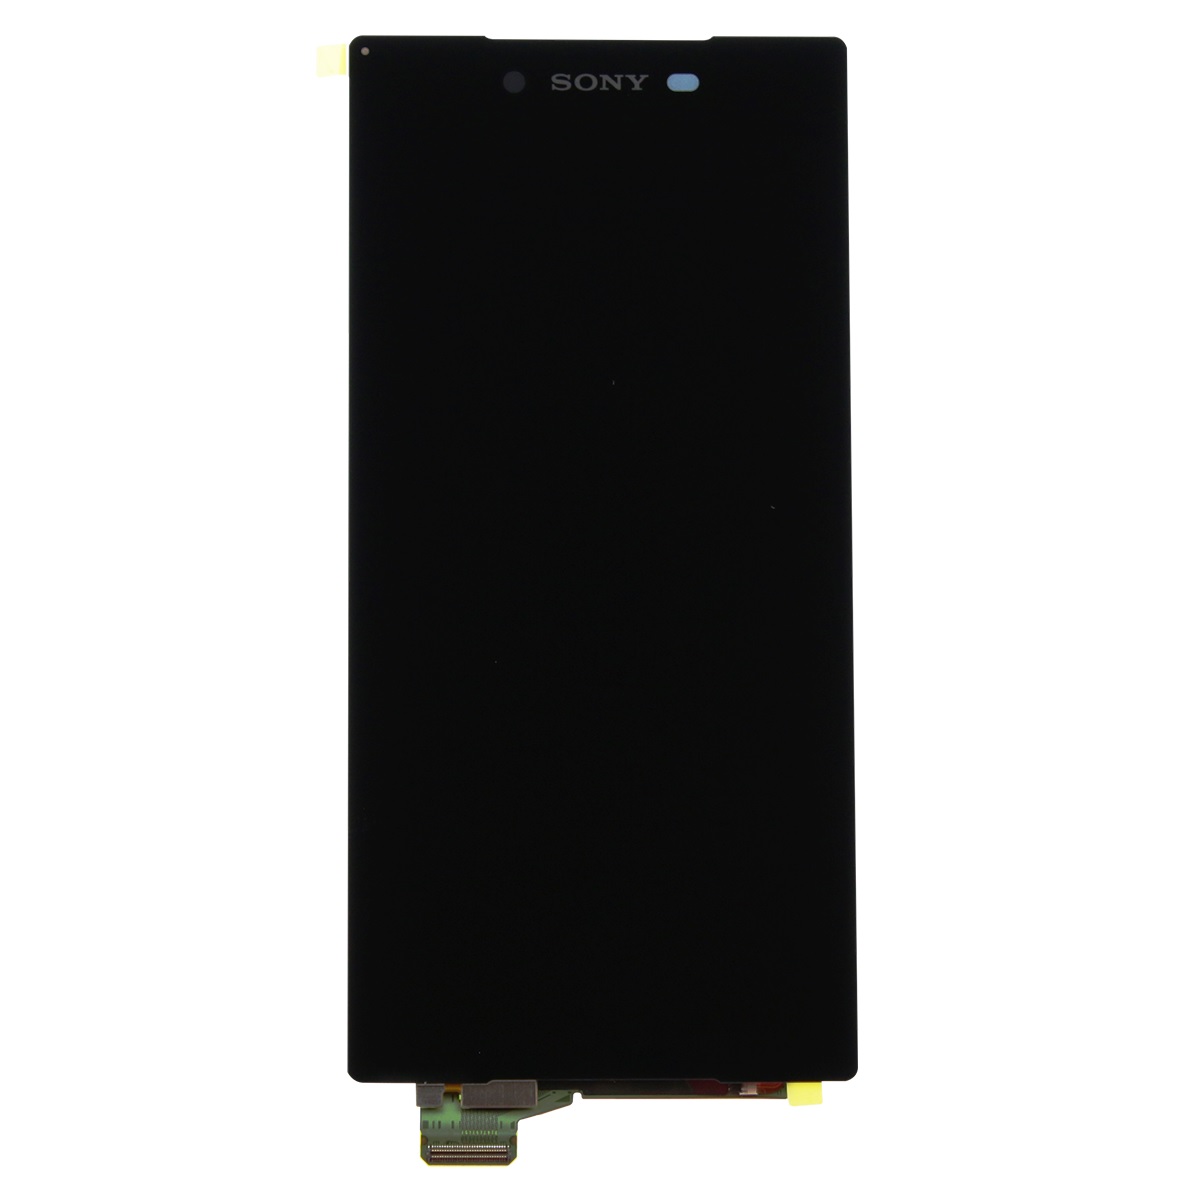 Sony Xperia z дисплей. Дисплей для Sony e6653/e6683 (z5/z5 Dual) в сборе черный. Дисплей Sony Xperia. Xperia 1 дисплей купить.